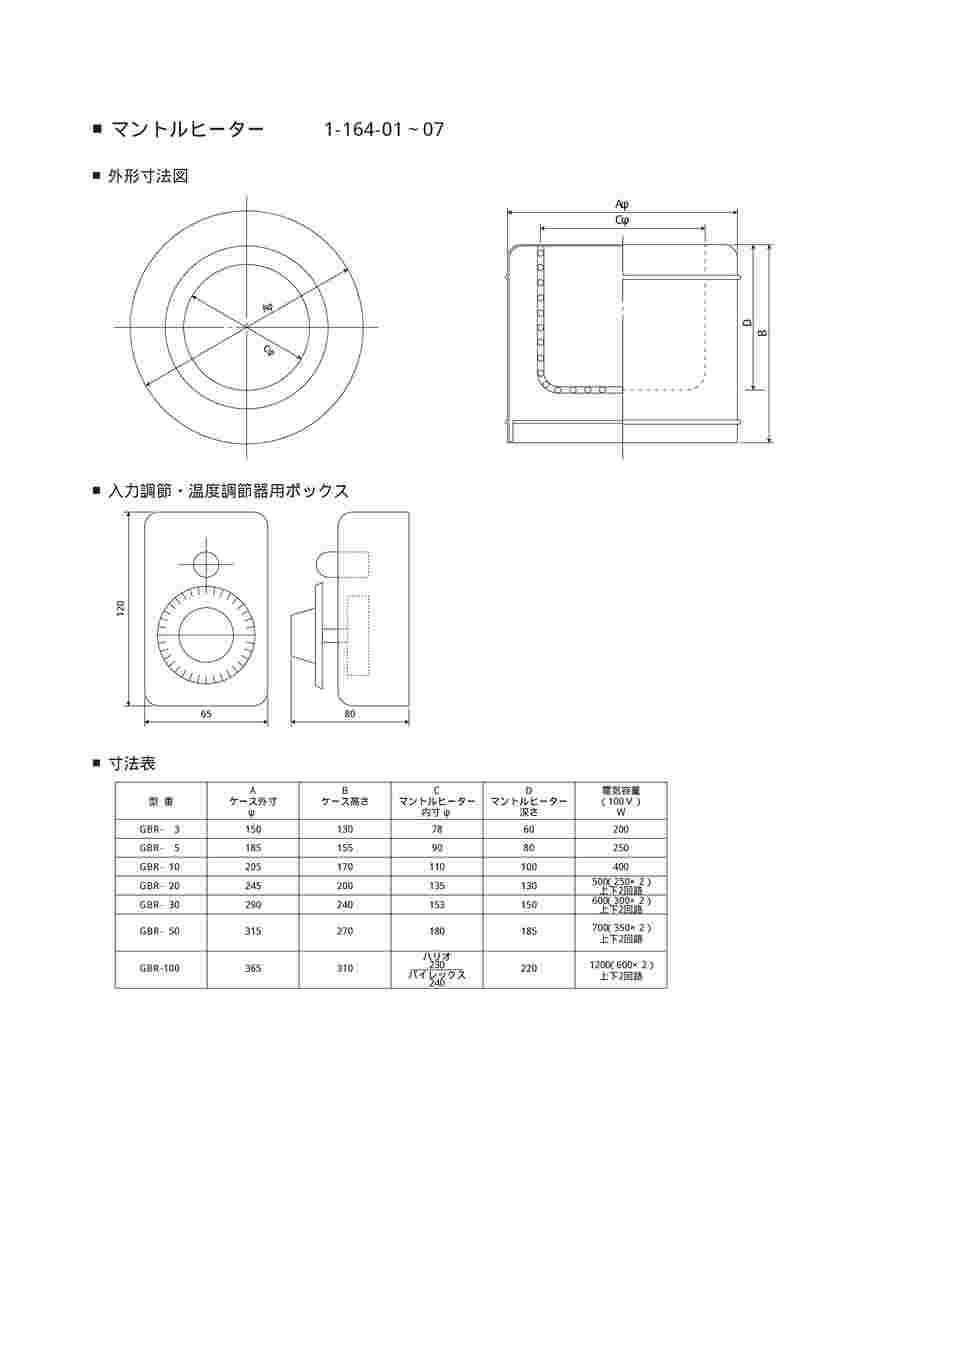 1-164-01 マントルヒーター入力調節器付き(ビーカー用) GBR-3 【AXEL